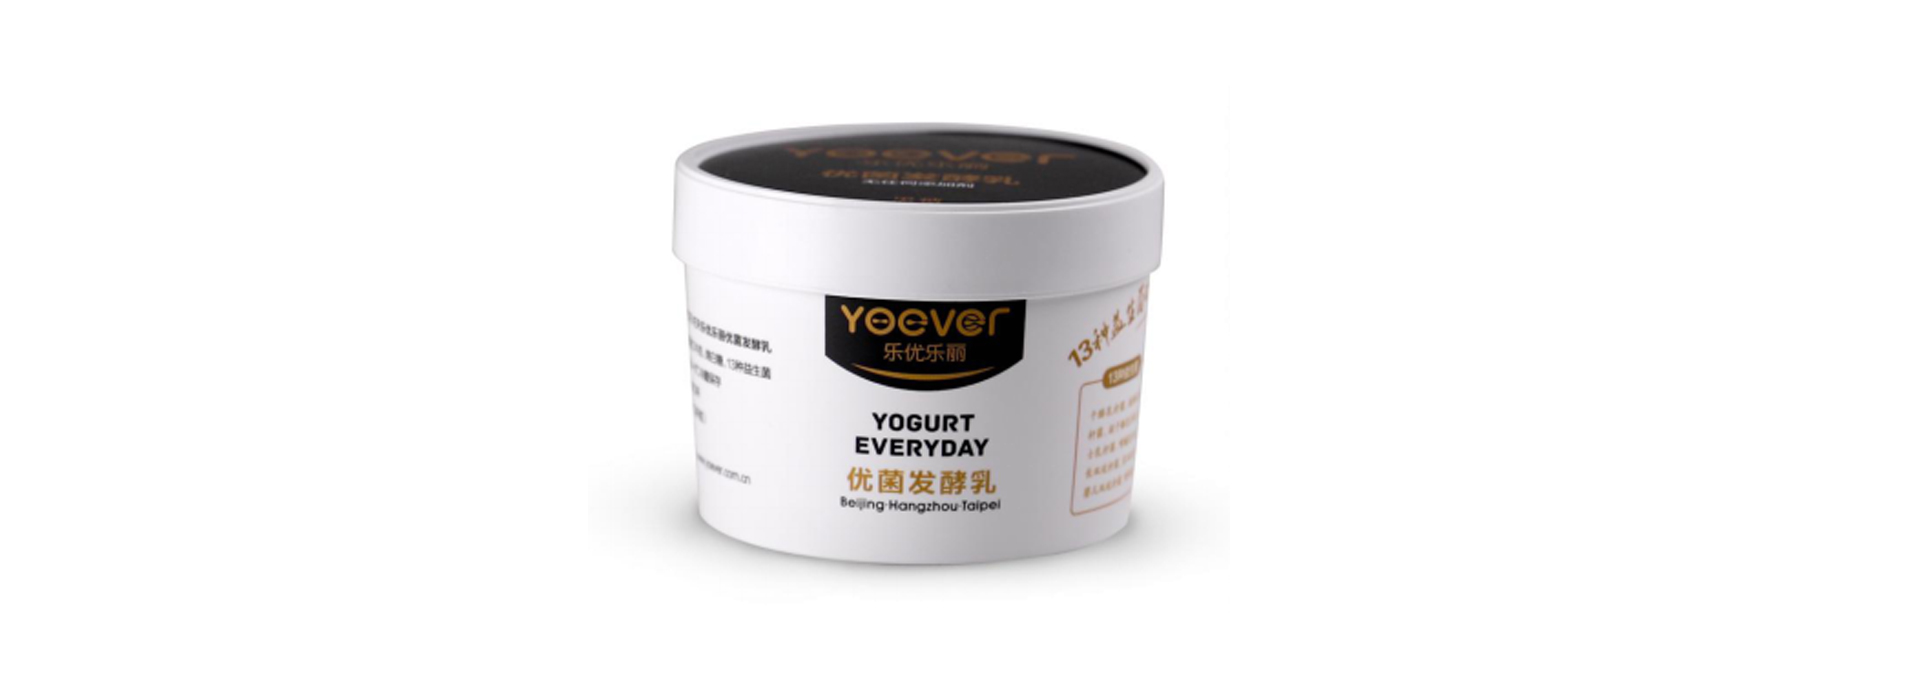 YN150g yogurt cup (with cover, holder, spoon)